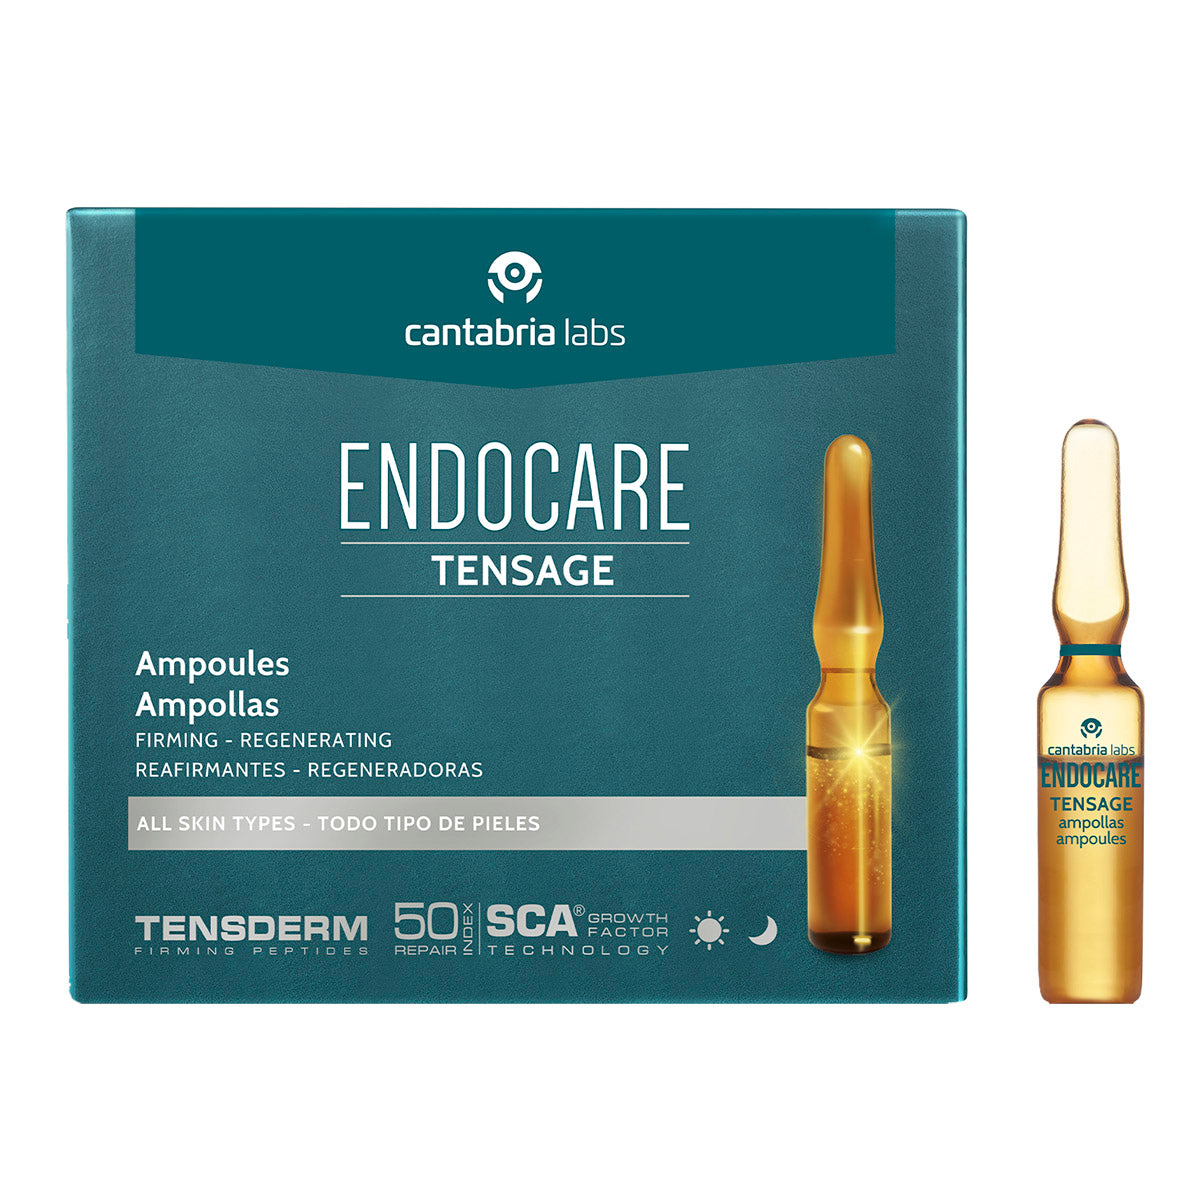 Endocare Tensage Ampollas, regeneradoras antiedad c/10 de 2ml.